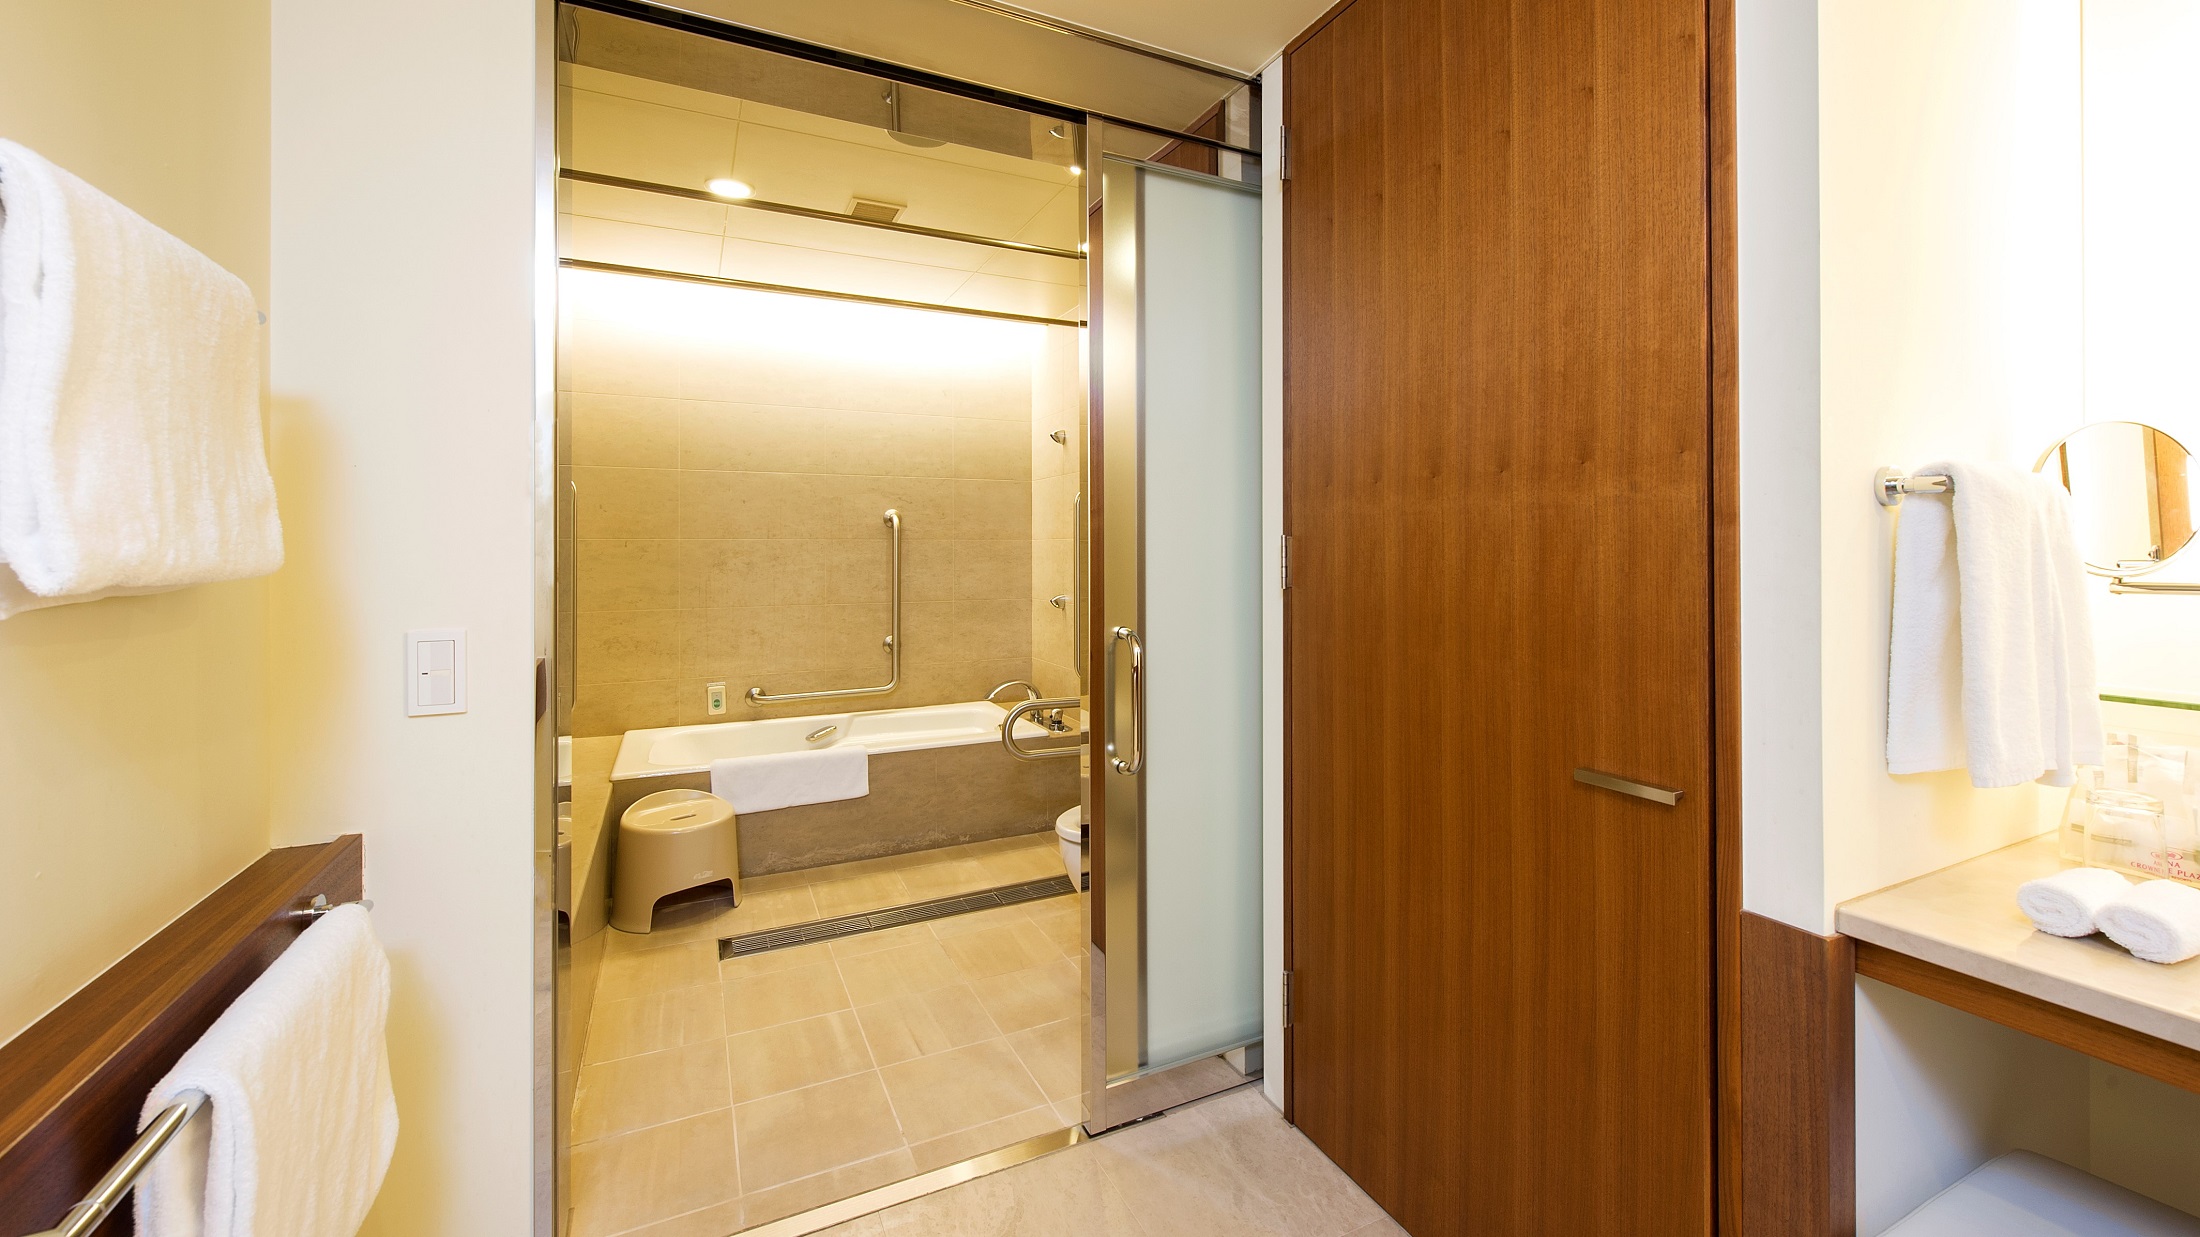 広いスペースを確保した浴室は、車椅子のままご利用可能。バリアフリー対応のお部屋も広々快適です。